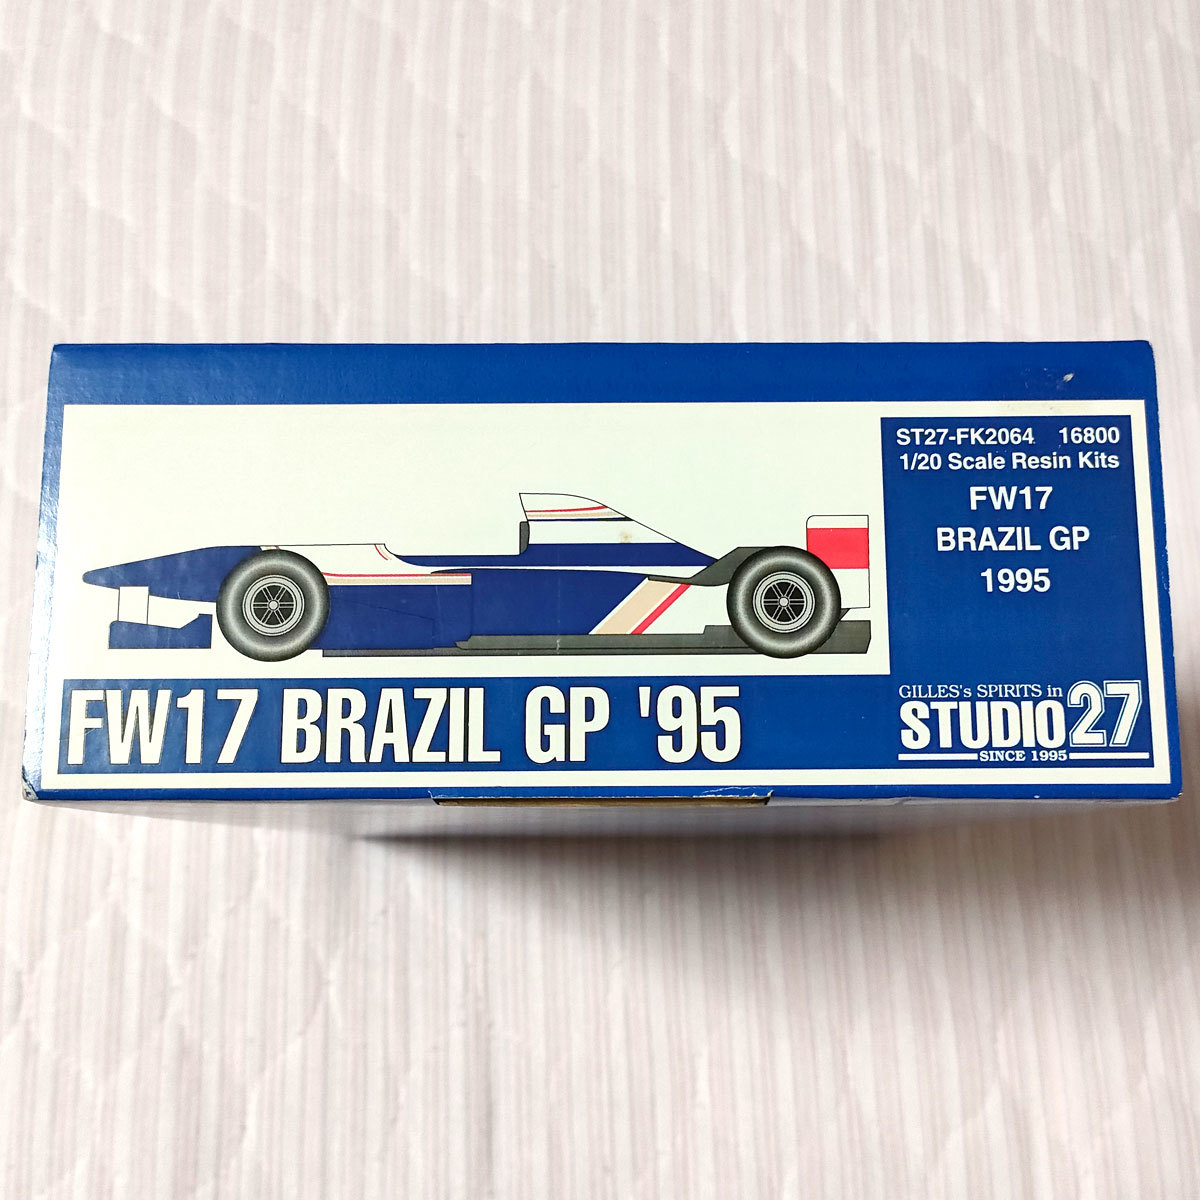 ウィリアムズ FW17 ルノー ブラジルGP 1995 スタジオ27 1/20 ガレージキット STUDIO27